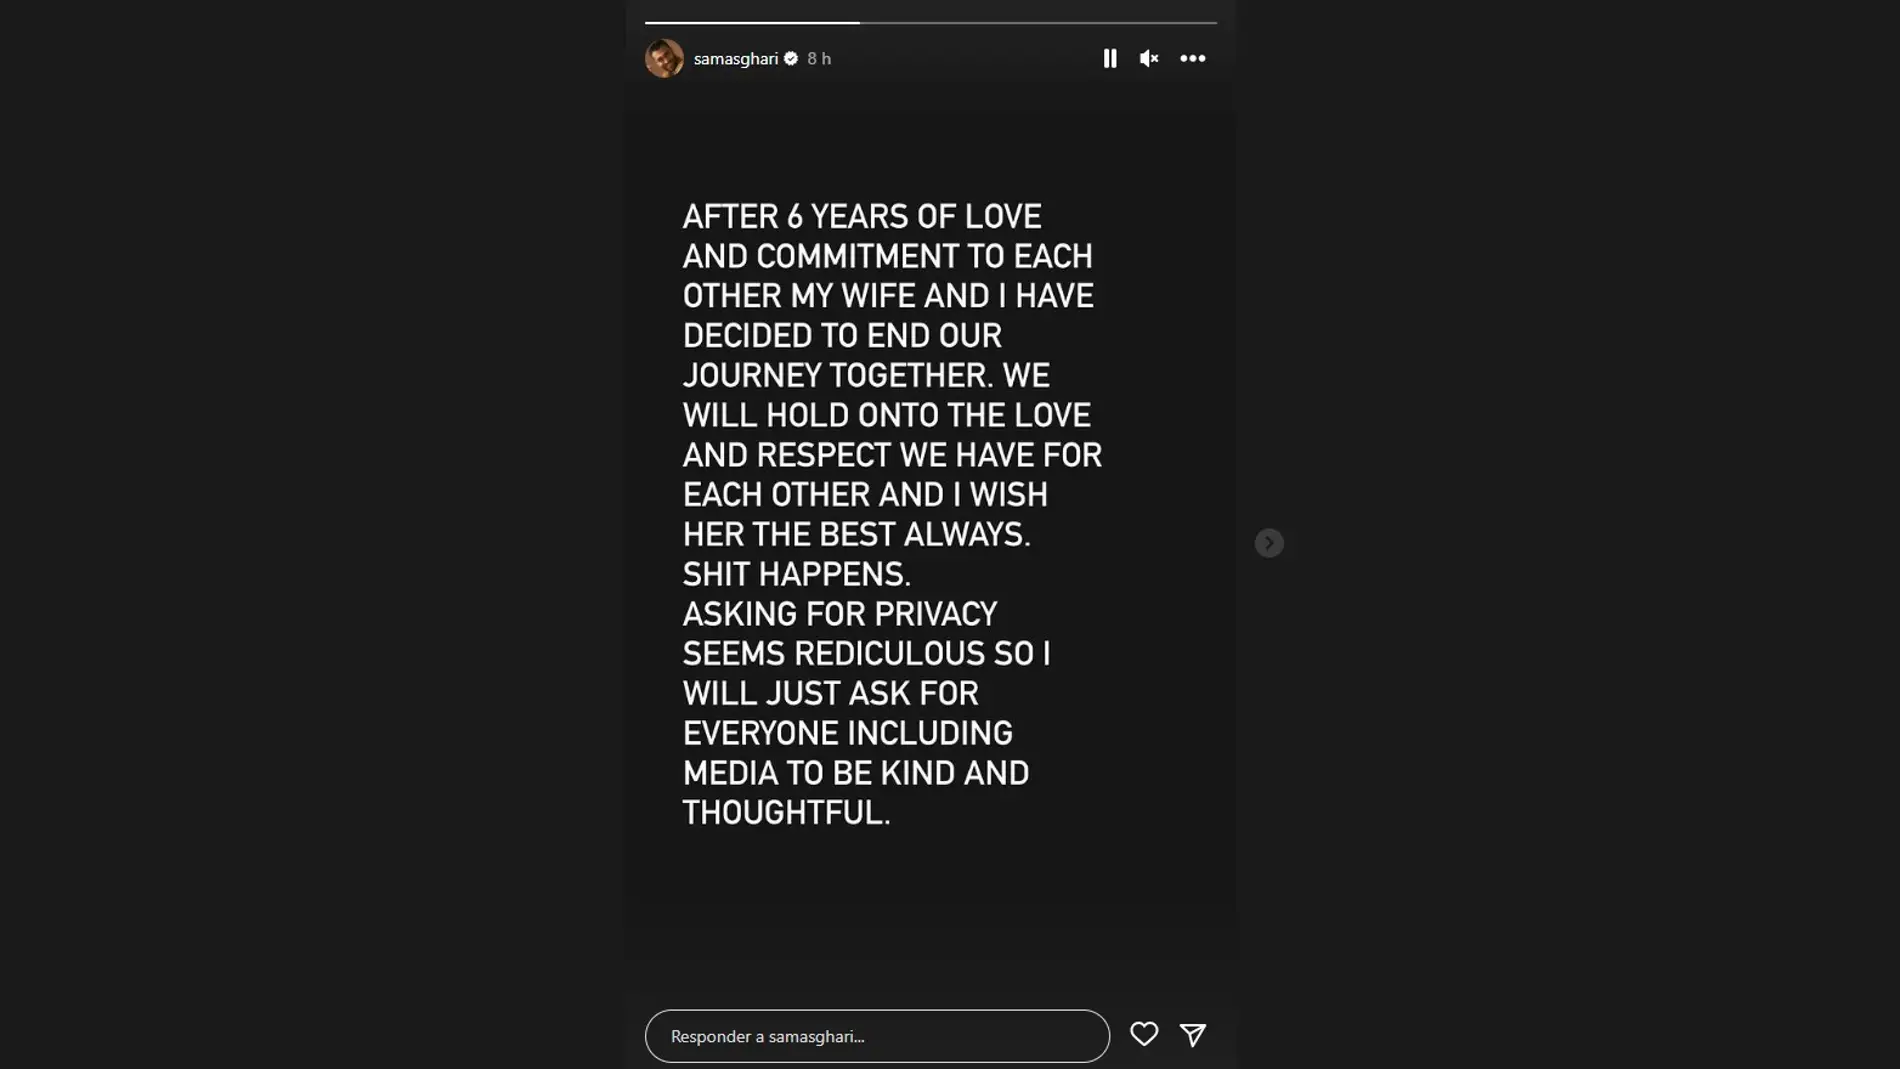 El comunicado de Sam Asghari para anunciar su separación.